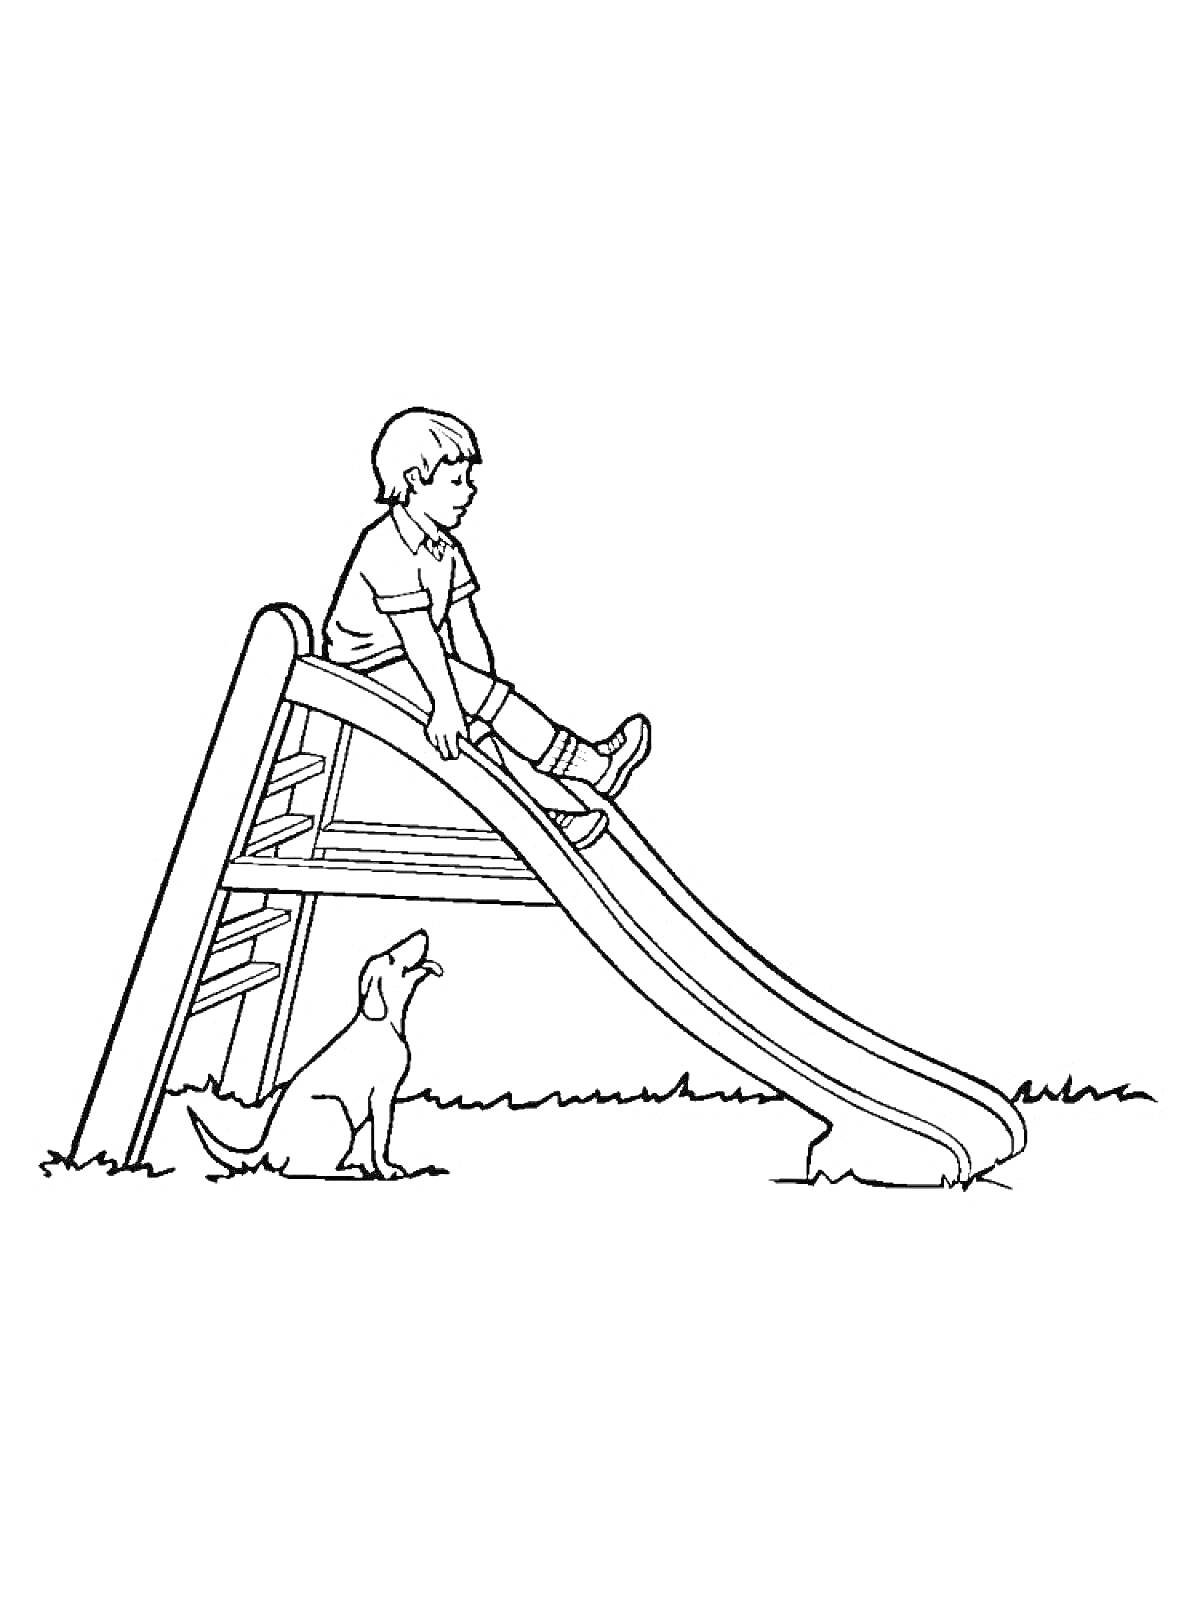 Ребенок на горке с собакой на траве